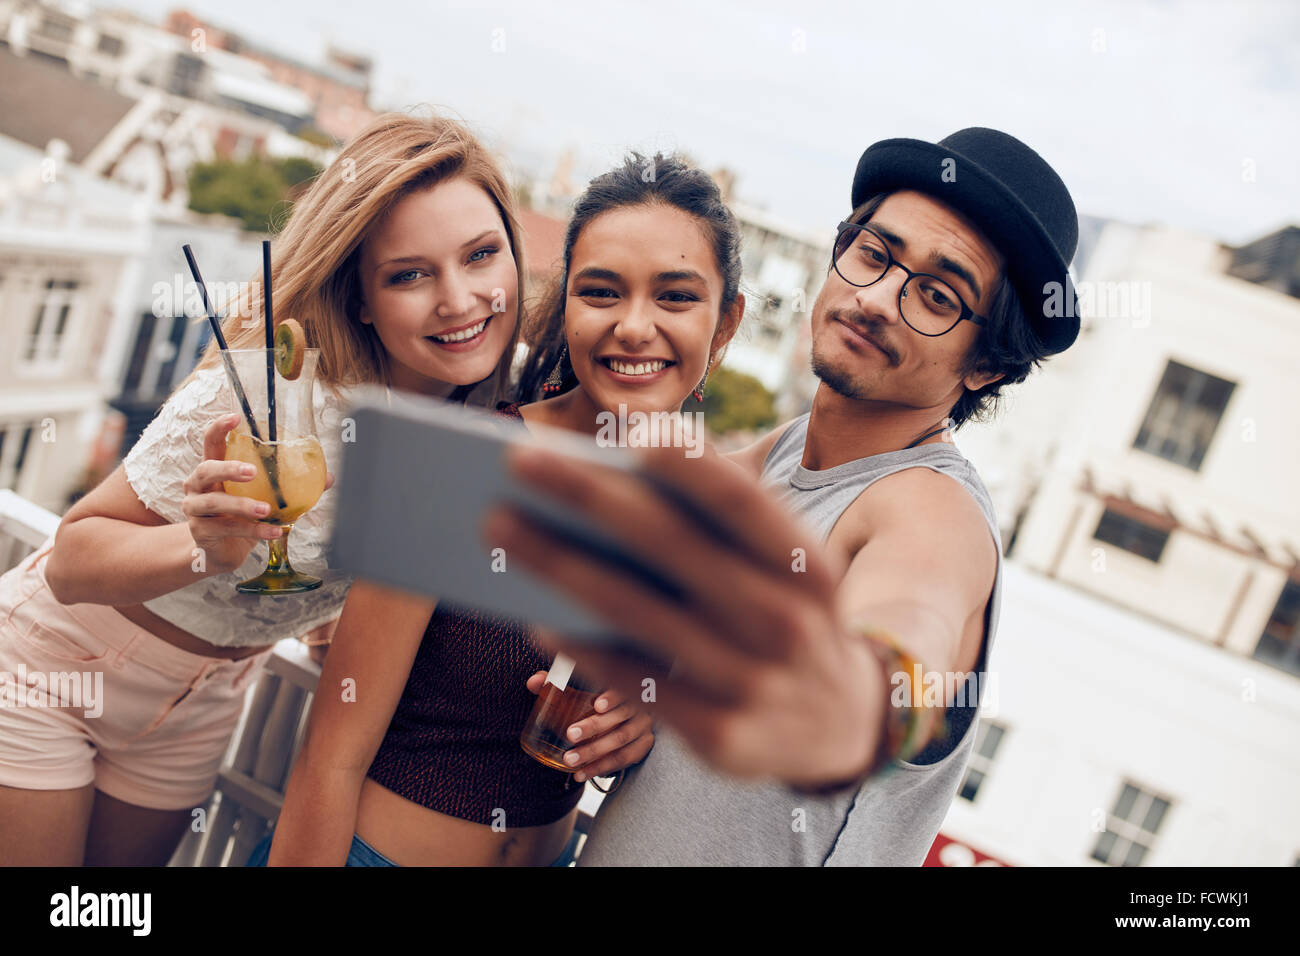 Multirazziale persone godendo in party con bevande e prendendo un autoritratto. Tre giovani amici prendendo selfie con smart phone Foto Stock